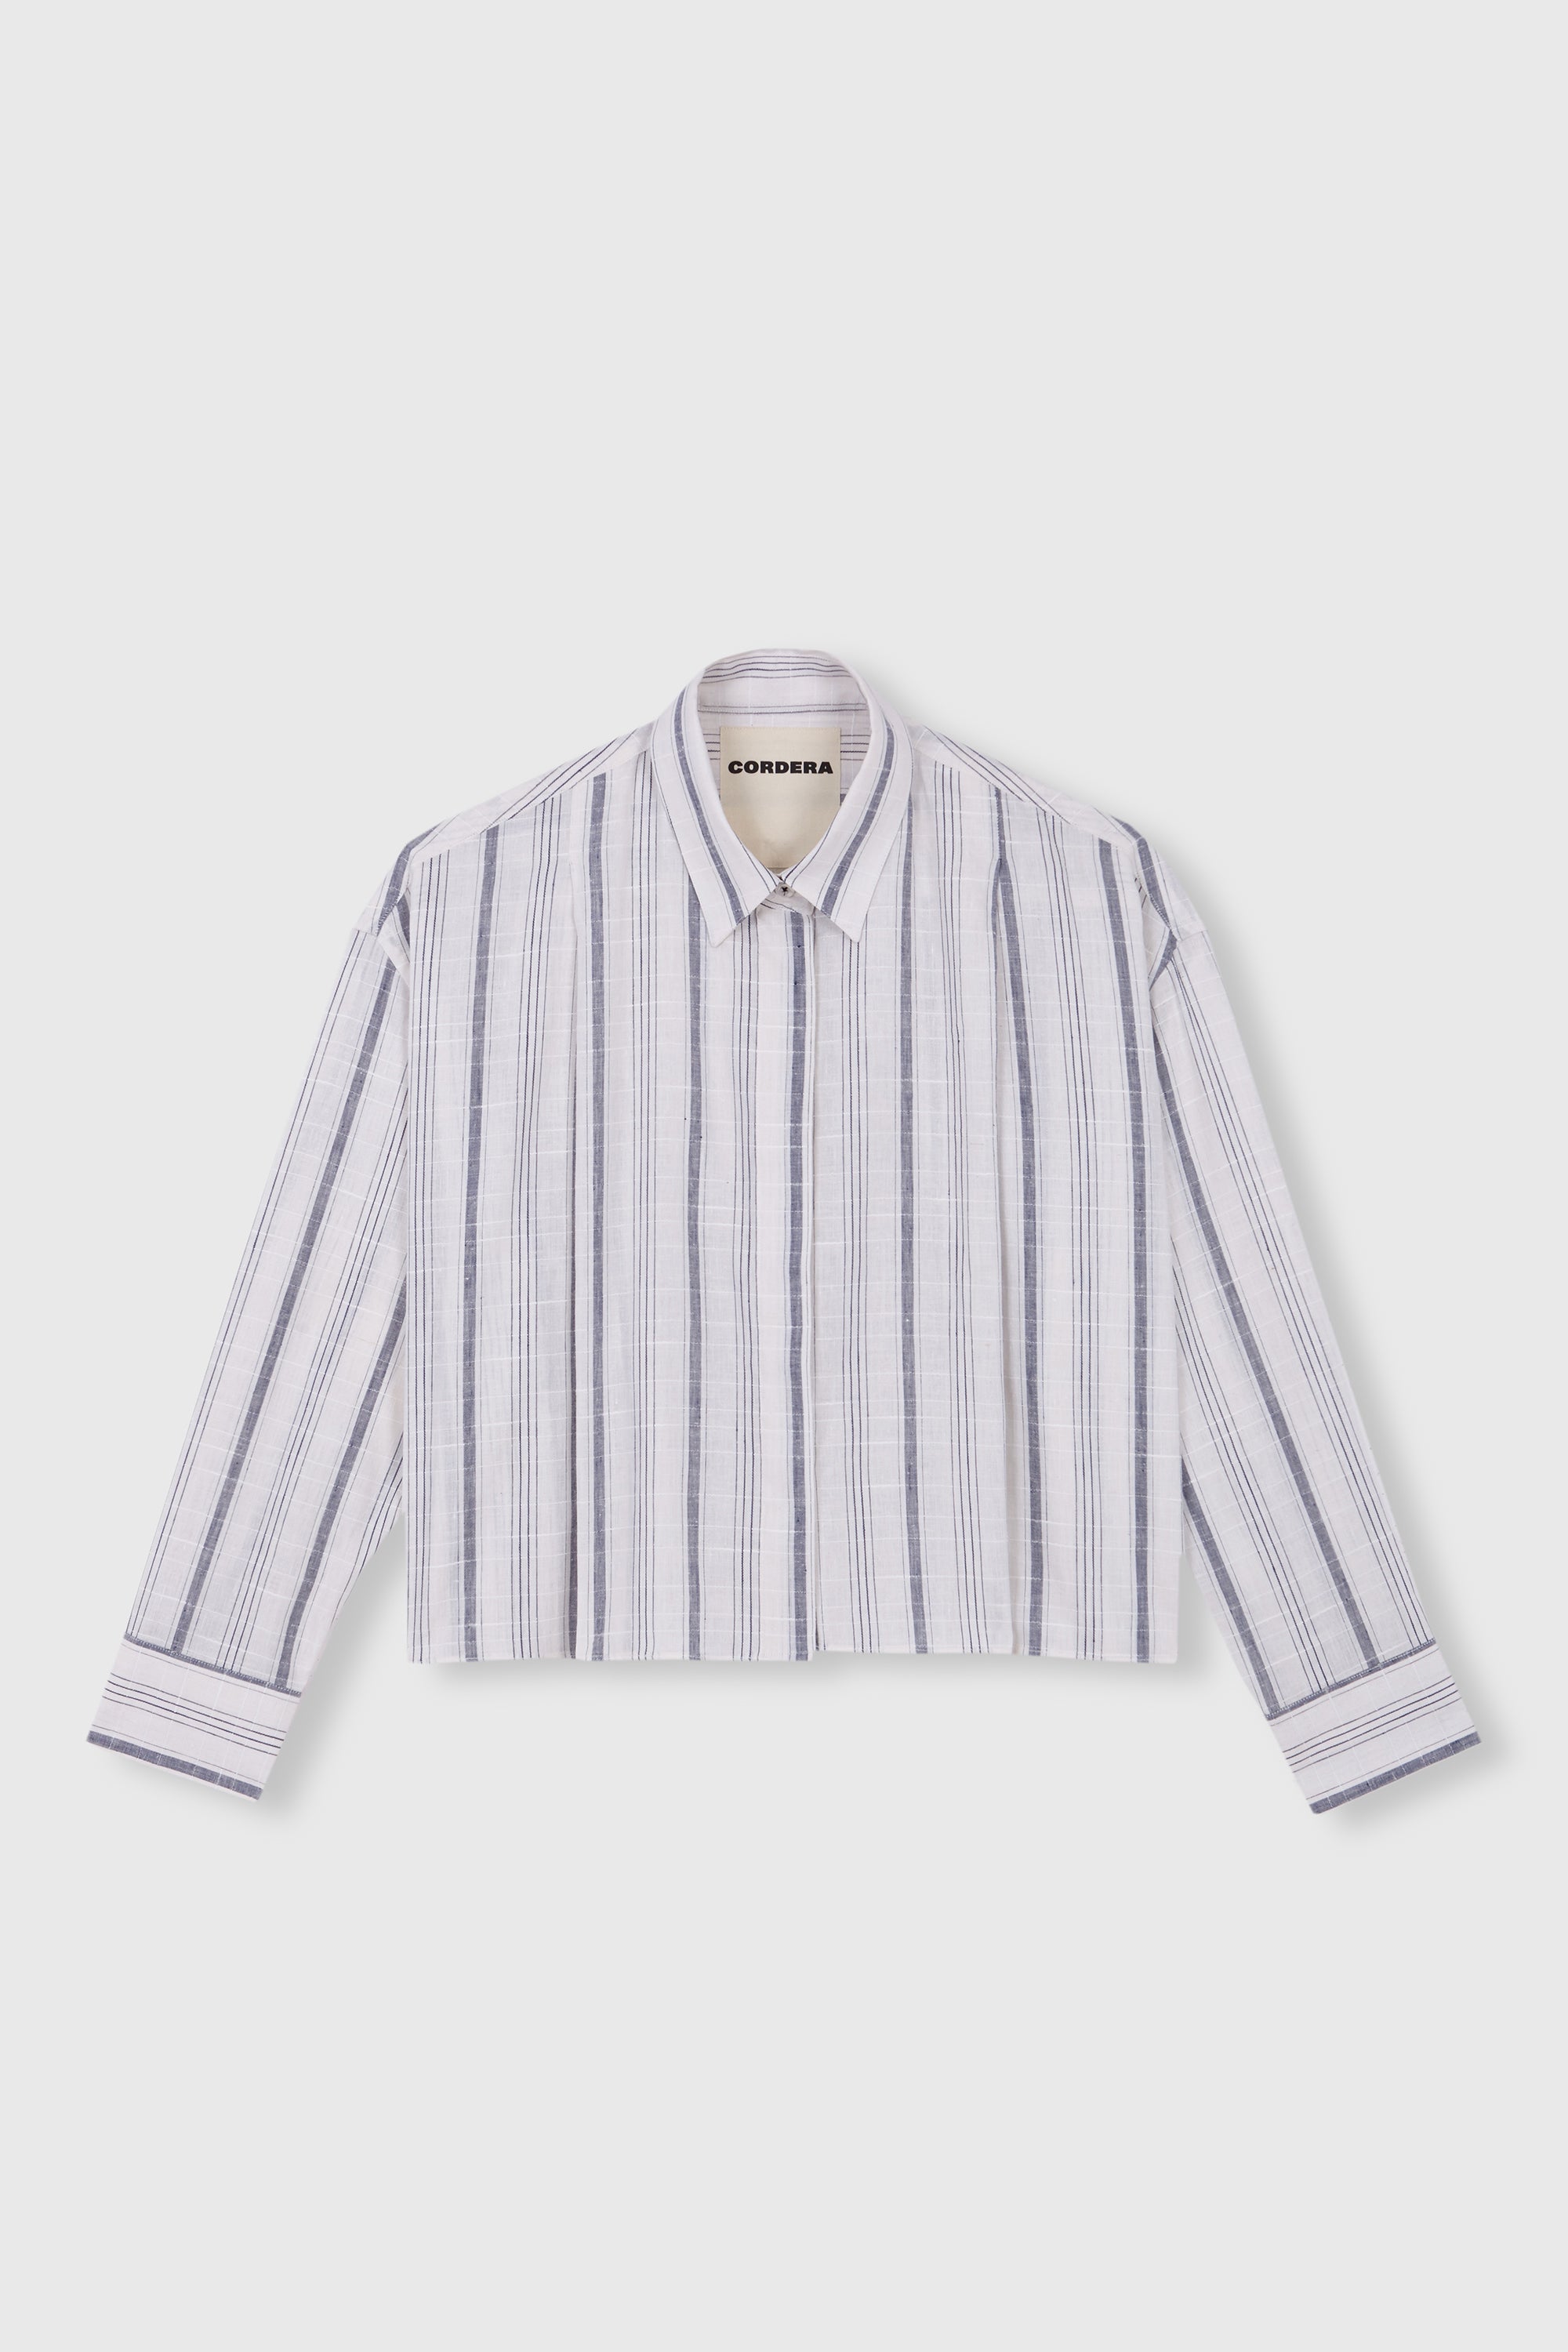 Striped Checkered Shirt Indigo Cordera